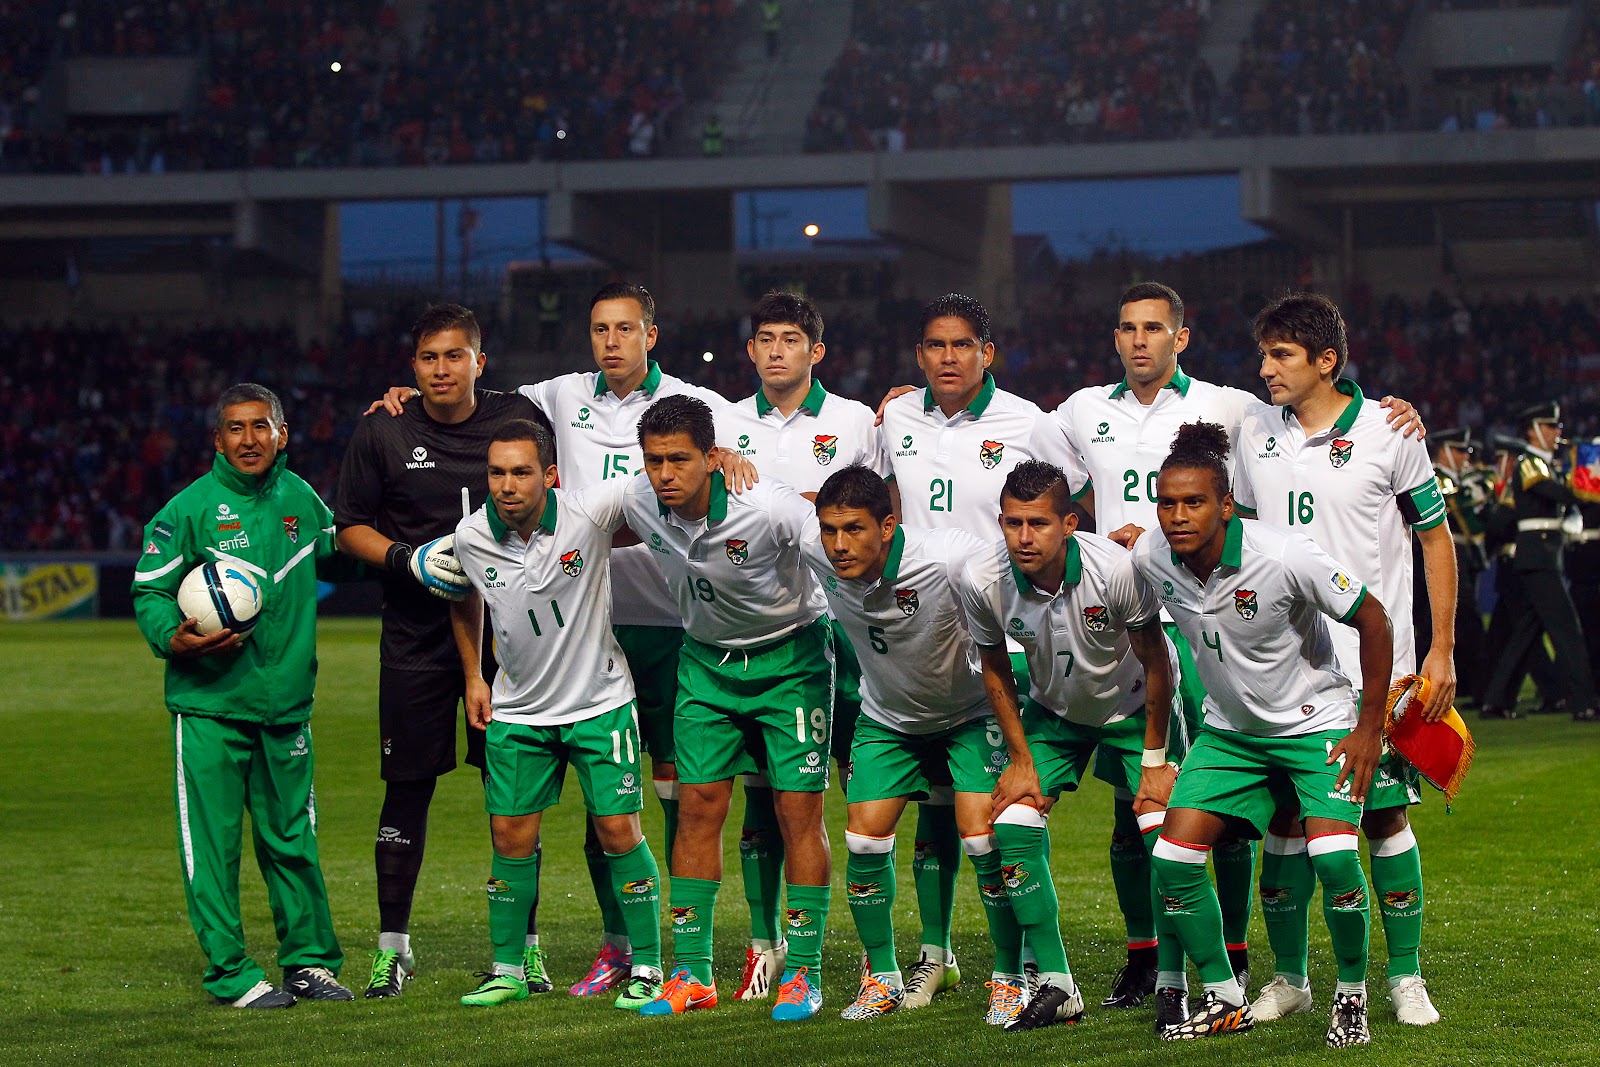 Formación de Bolivia ante Chile, amistoso disputado el 14 de octubre de 2014